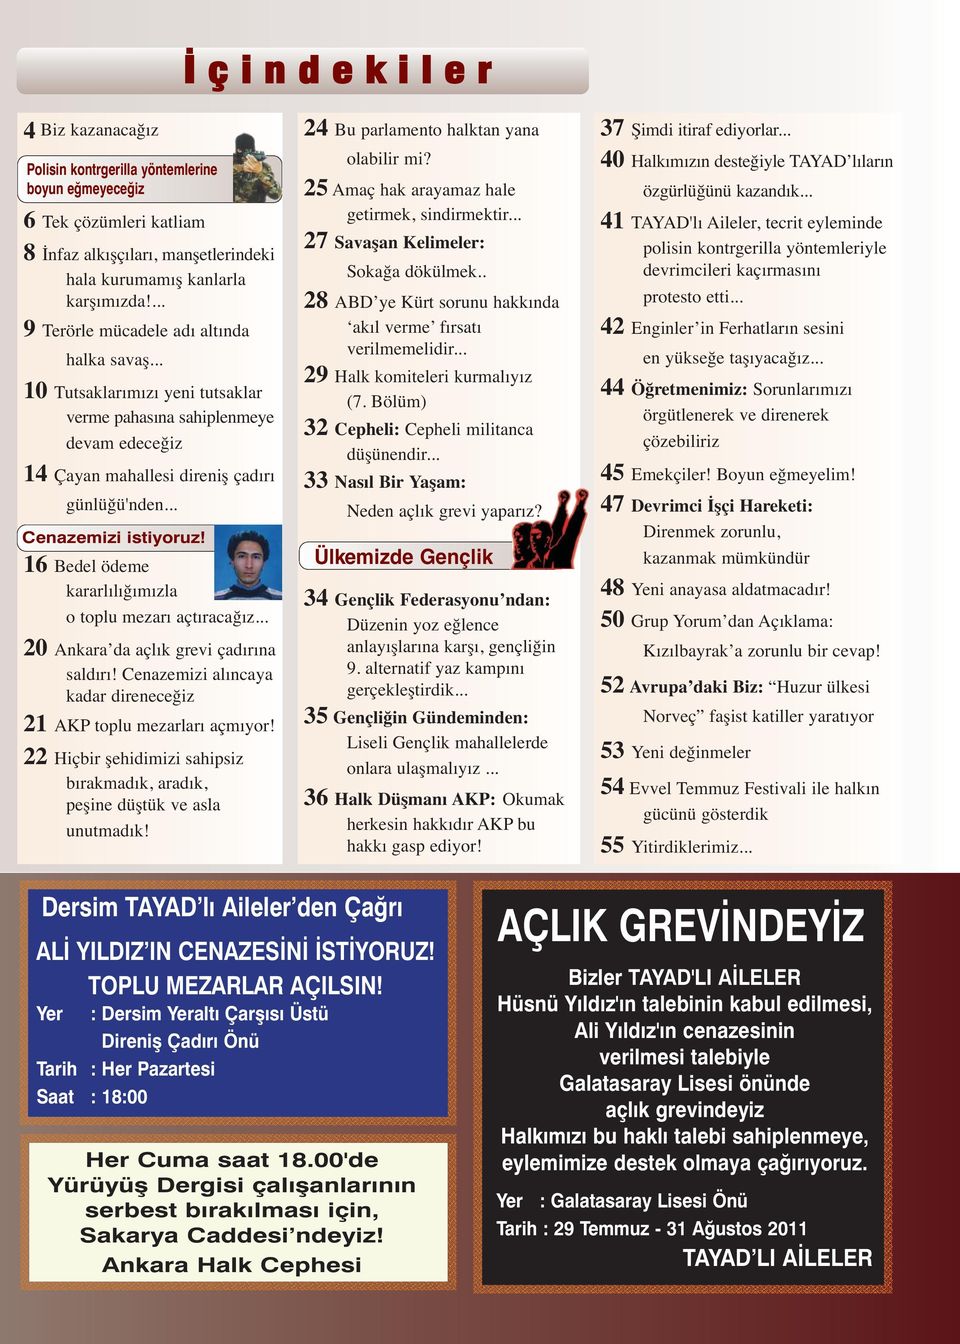 16 Bedel ödeme kararlılığımızla o toplu mezarı açtıracağız... 20 Ankara da açlık grevi çadırına saldırı! Cenazemizi alıncaya kadar direneceğiz 21 AKP toplu mezarları açmıyor!